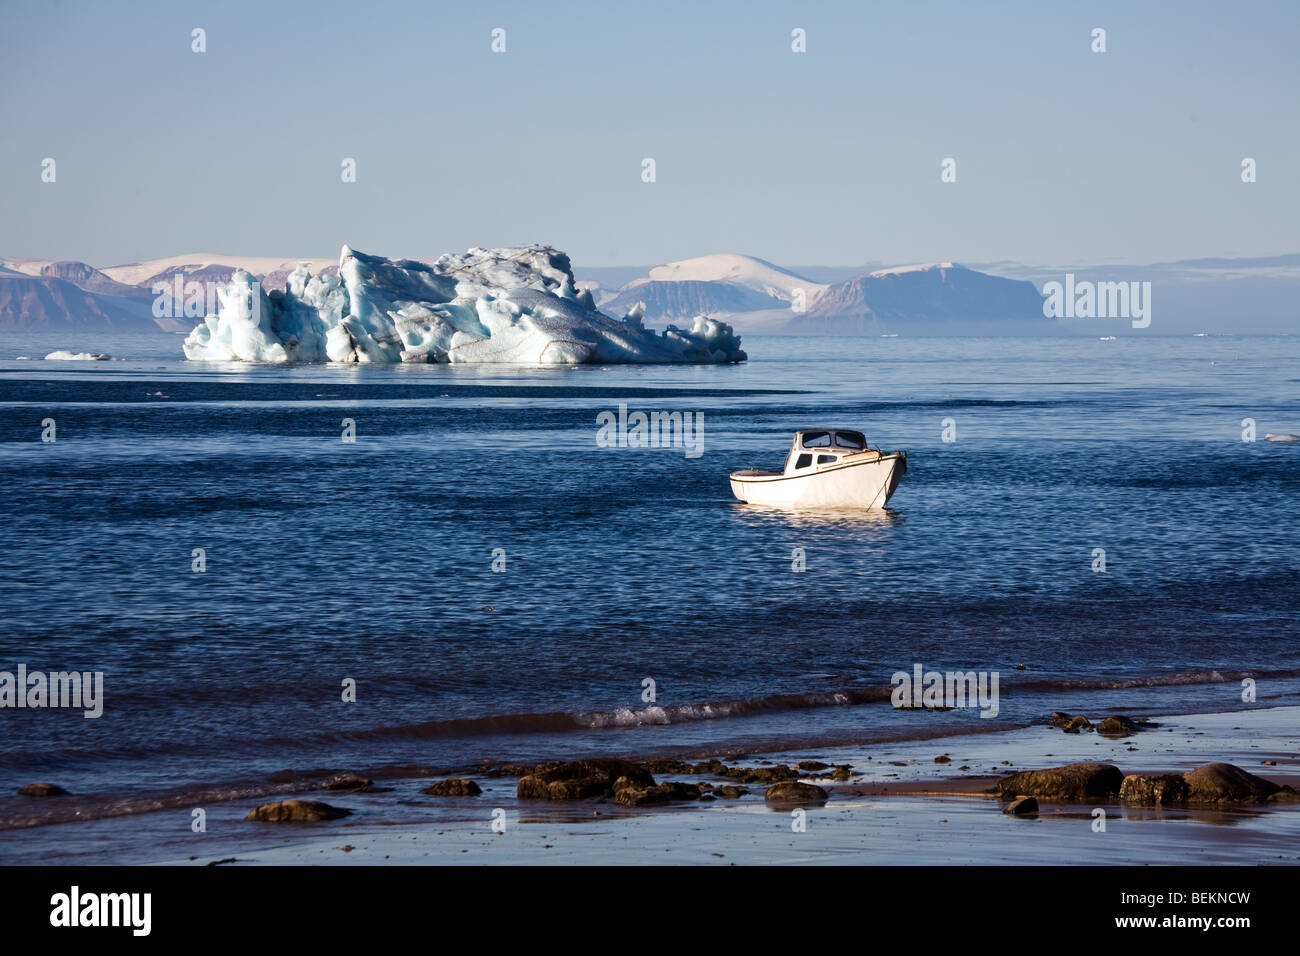 Bateau de pêche à Siorapaluk, le plus septentrional du monde Règlement de chasse/pêche (77 degrés 42 minutes de latitude nord), le nord du Groenland. Banque D'Images